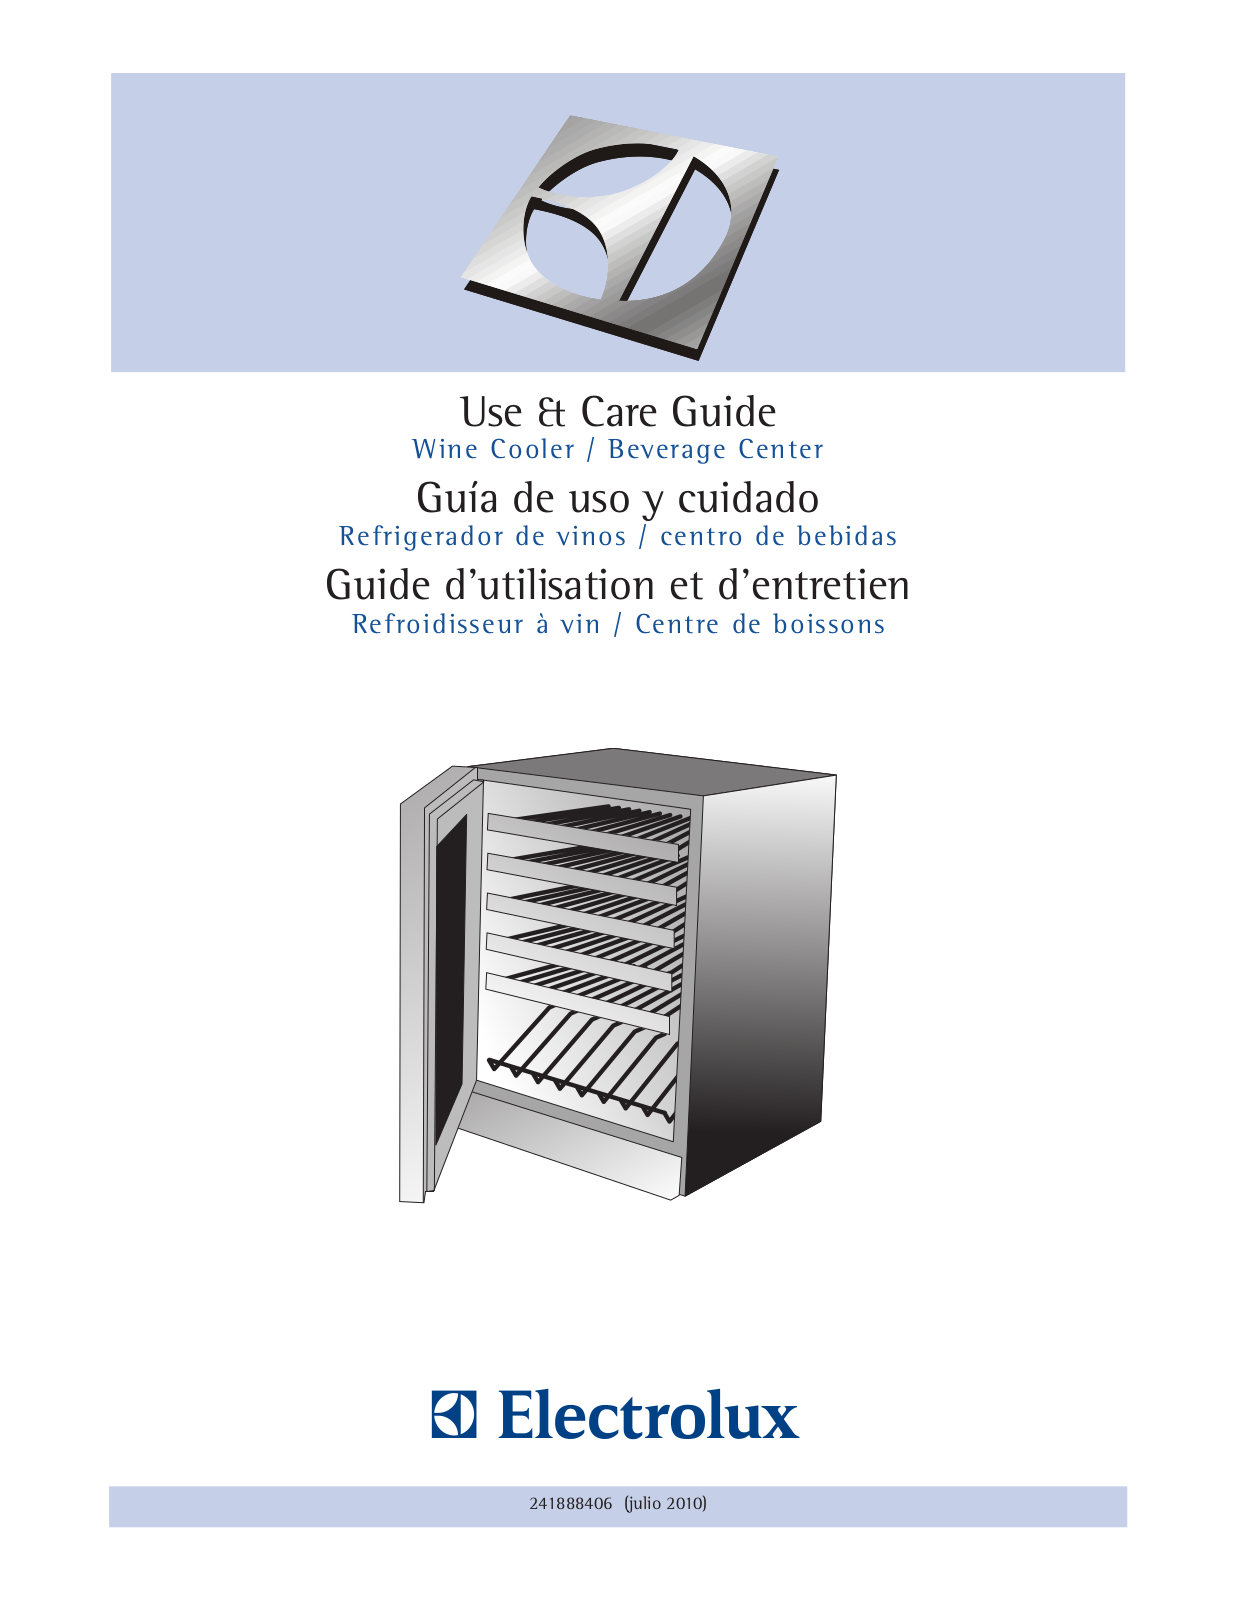 Electrolux Wine Cooler - Beverage Center User Manual